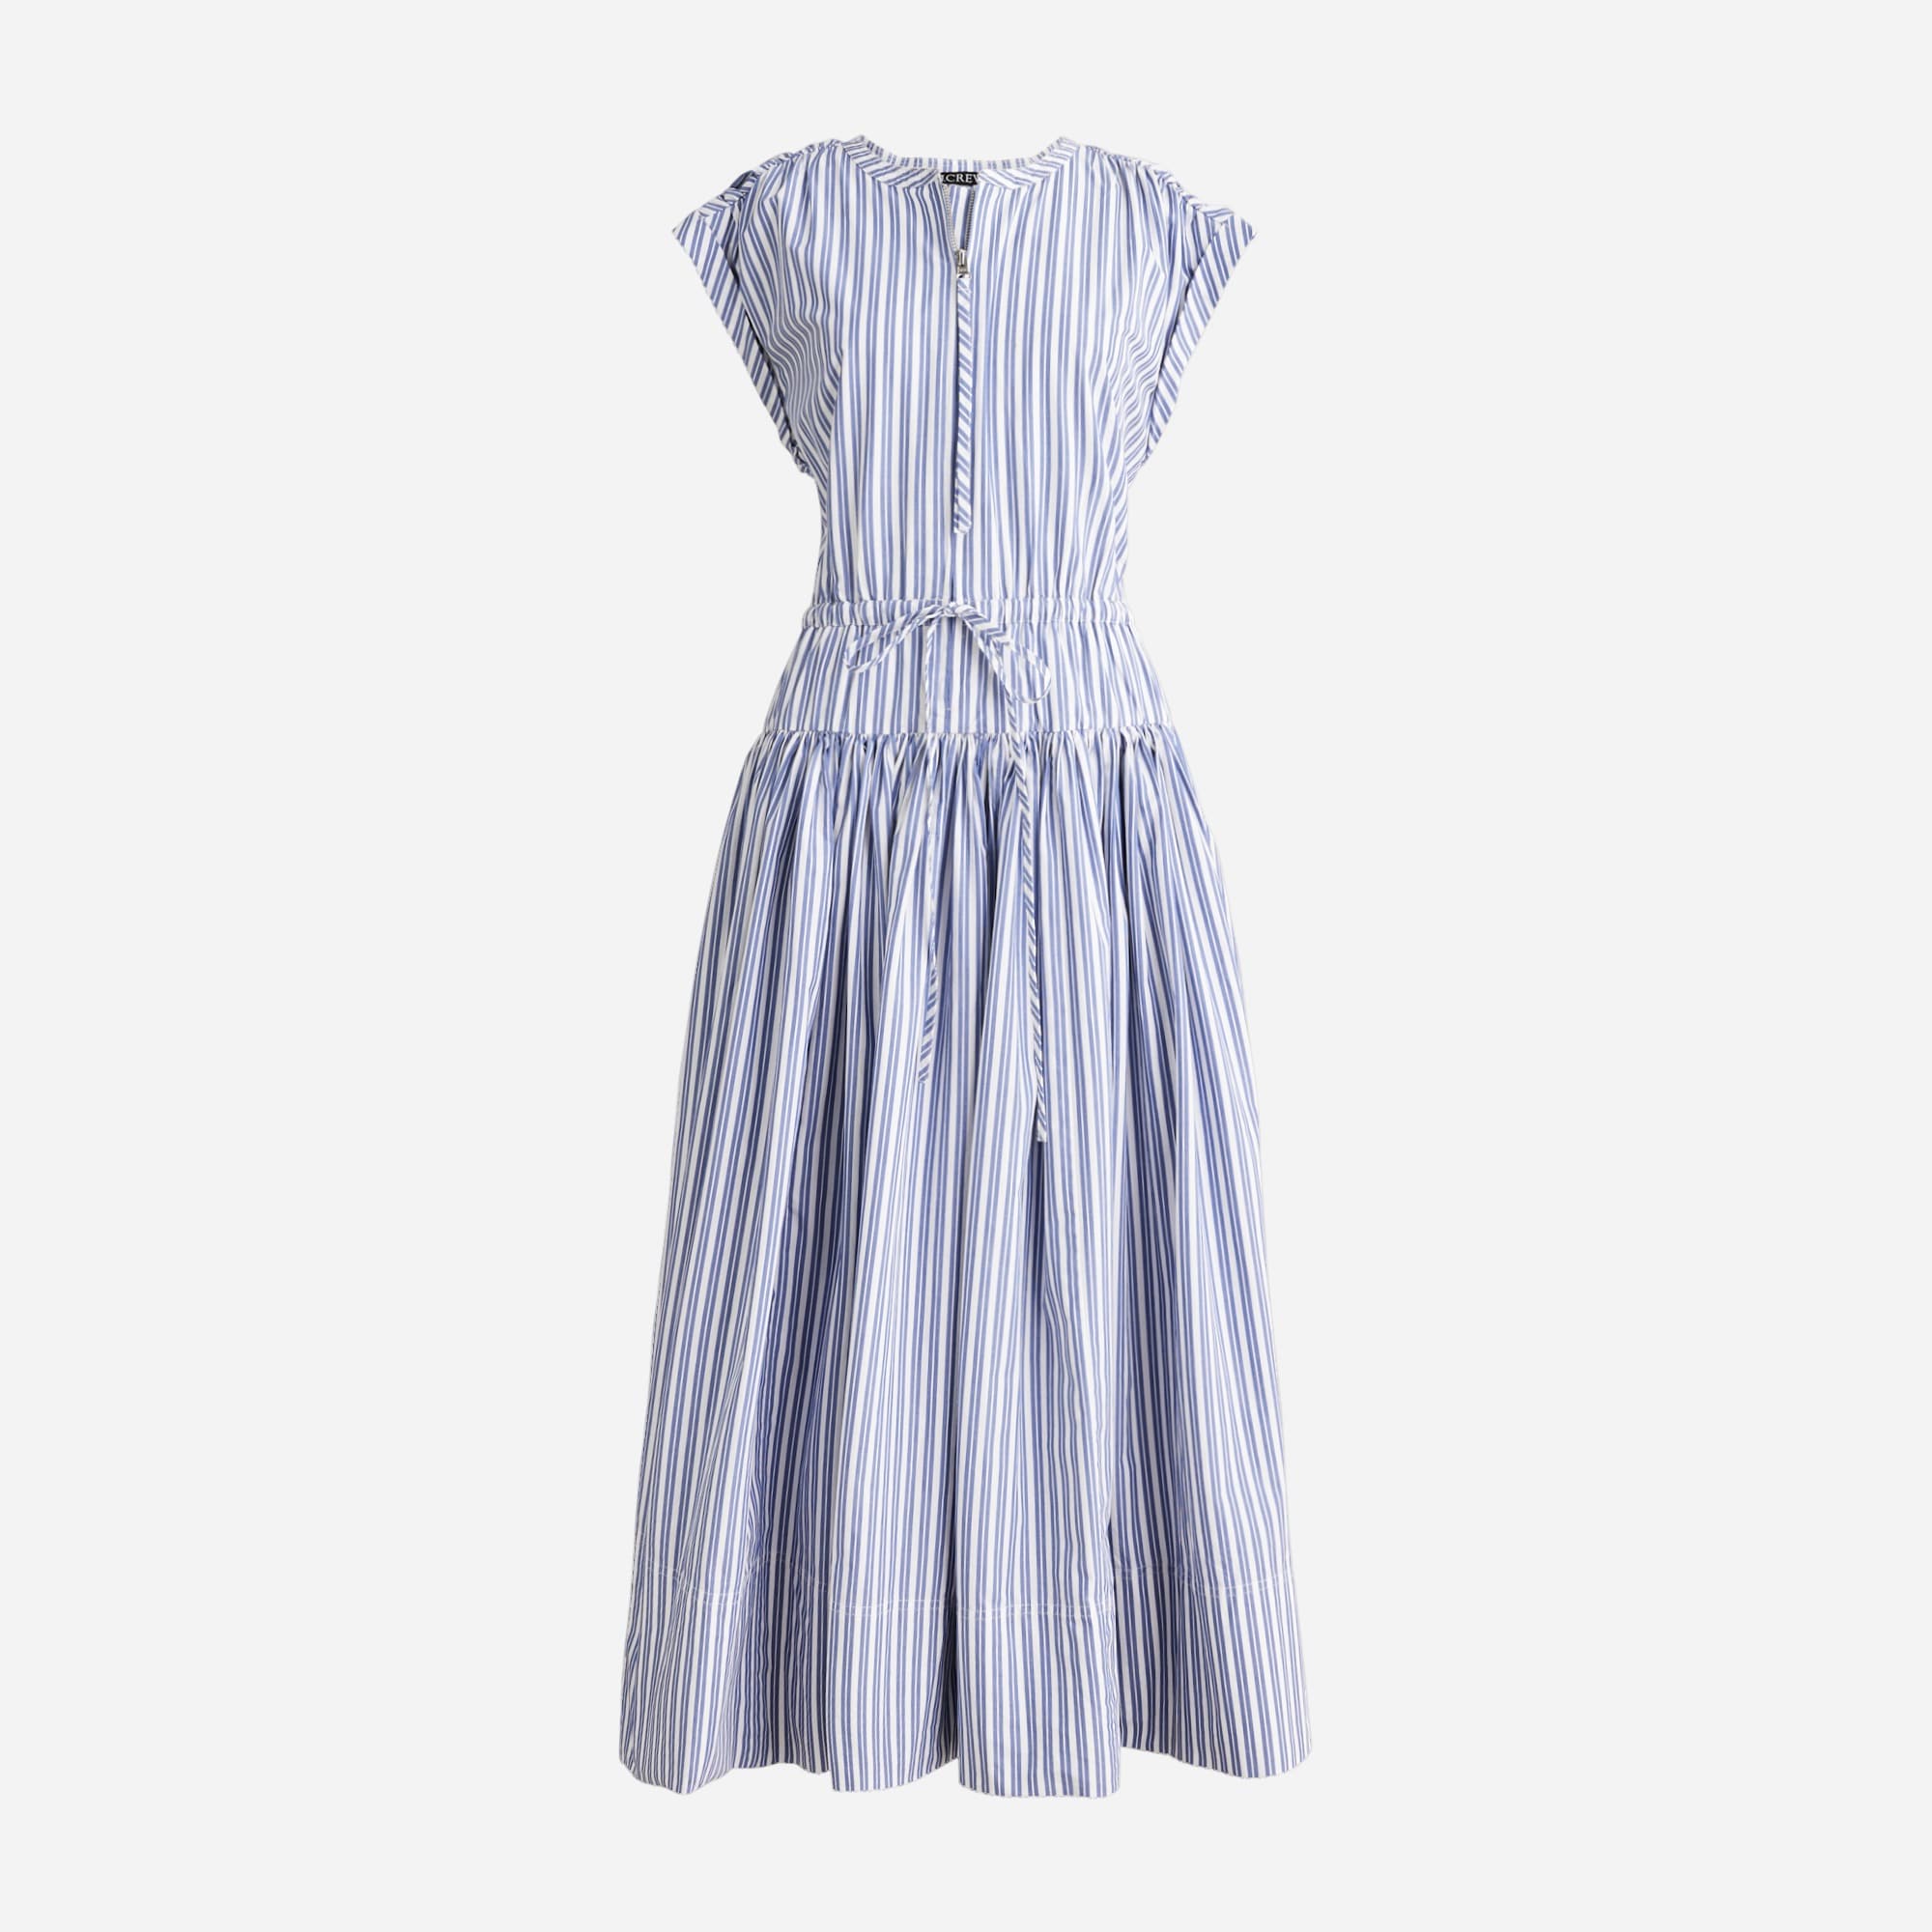  Drop-waist midi dress in striped cotton poplin